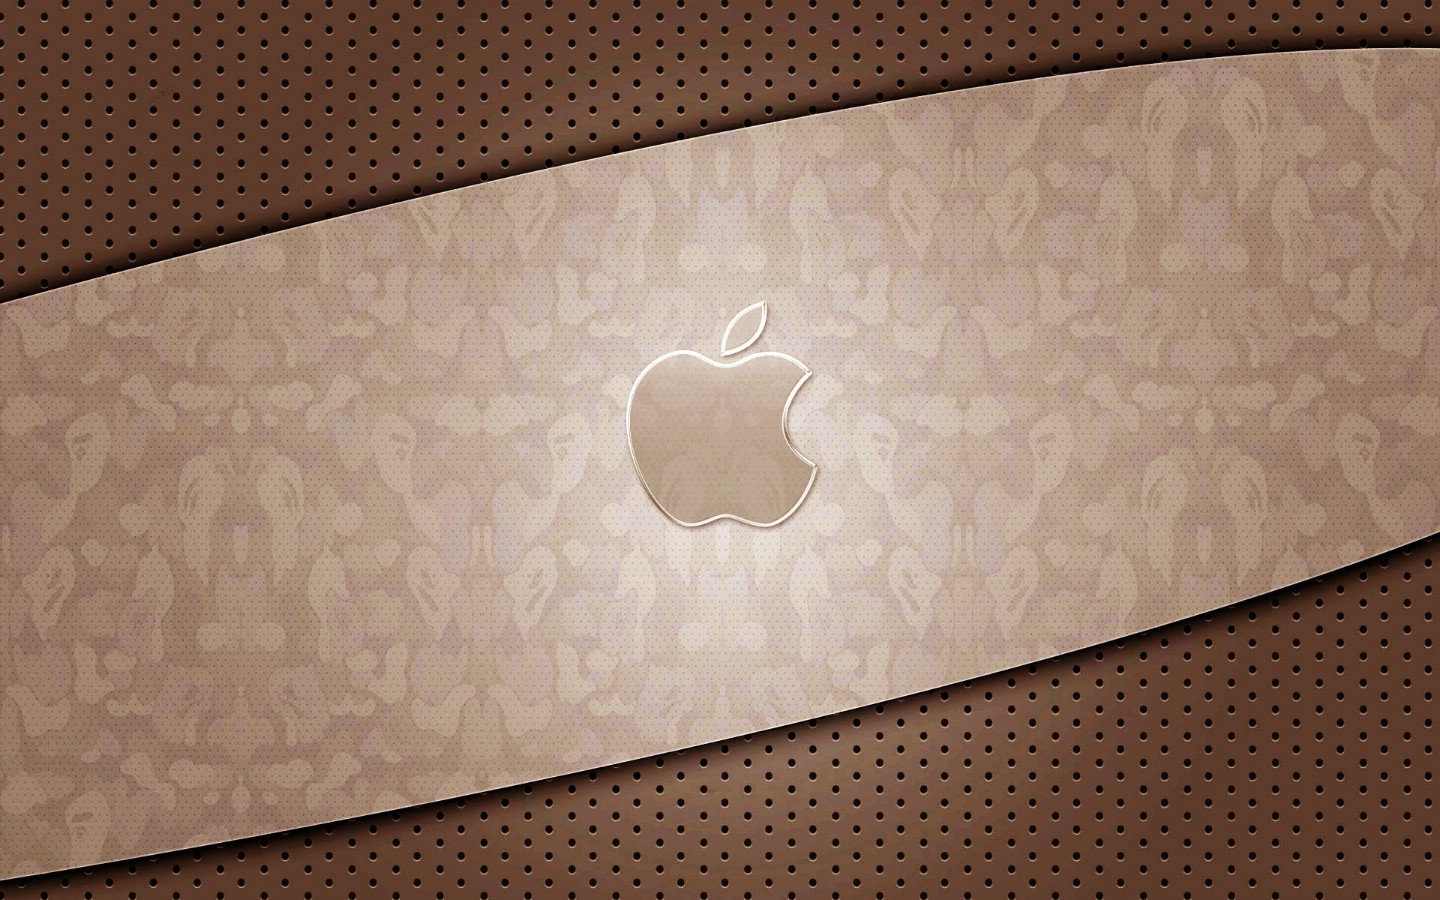 壁纸1440x900Apple主题壁纸壁纸 Apple主题壁纸壁纸 Apple主题壁纸图片 Apple主题壁纸素材 其他壁纸 其他图库 其他图片素材桌面壁纸